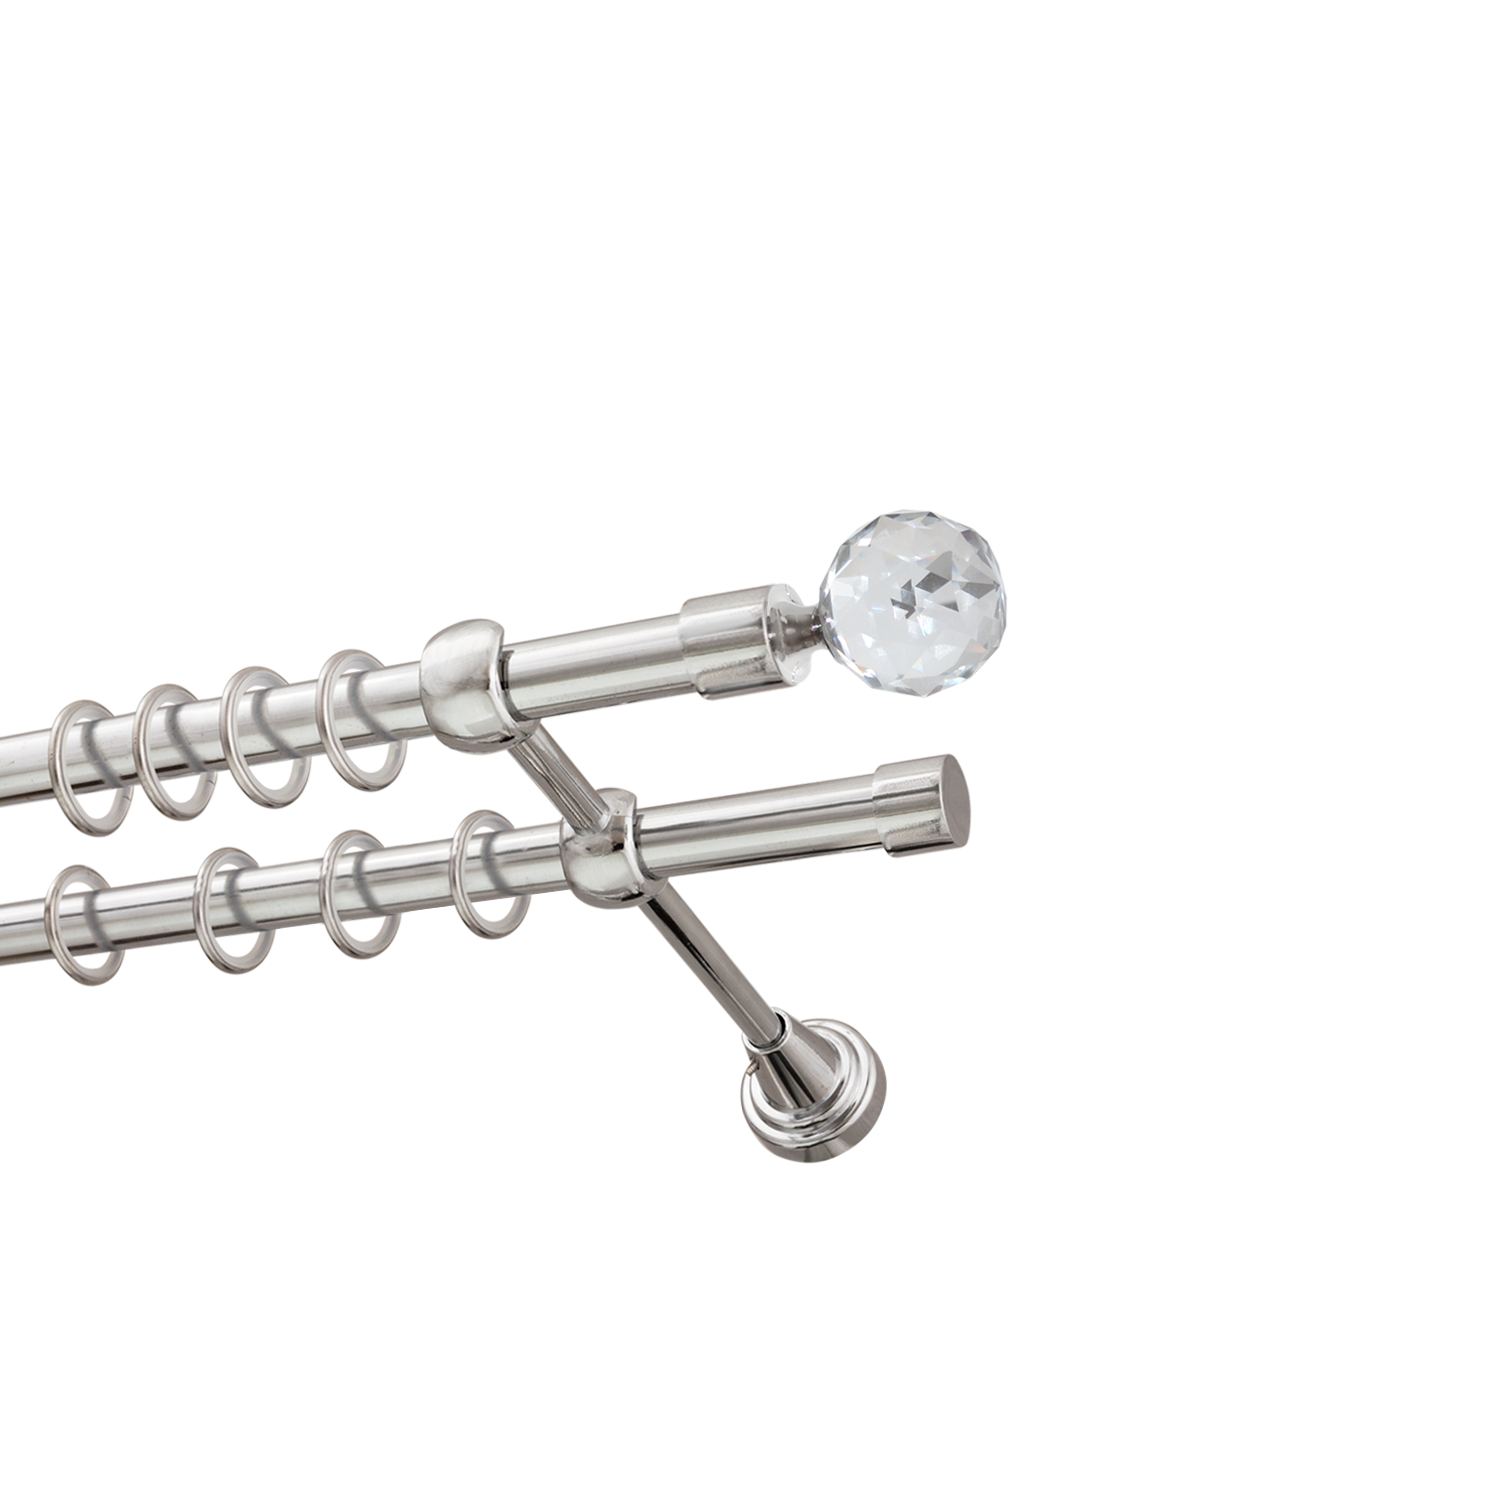 Металлический карниз для штор Карат, двухрядный 16/16 мм, серебро, гладкая штанга, длина 180 см - фото Wikidecor.ru